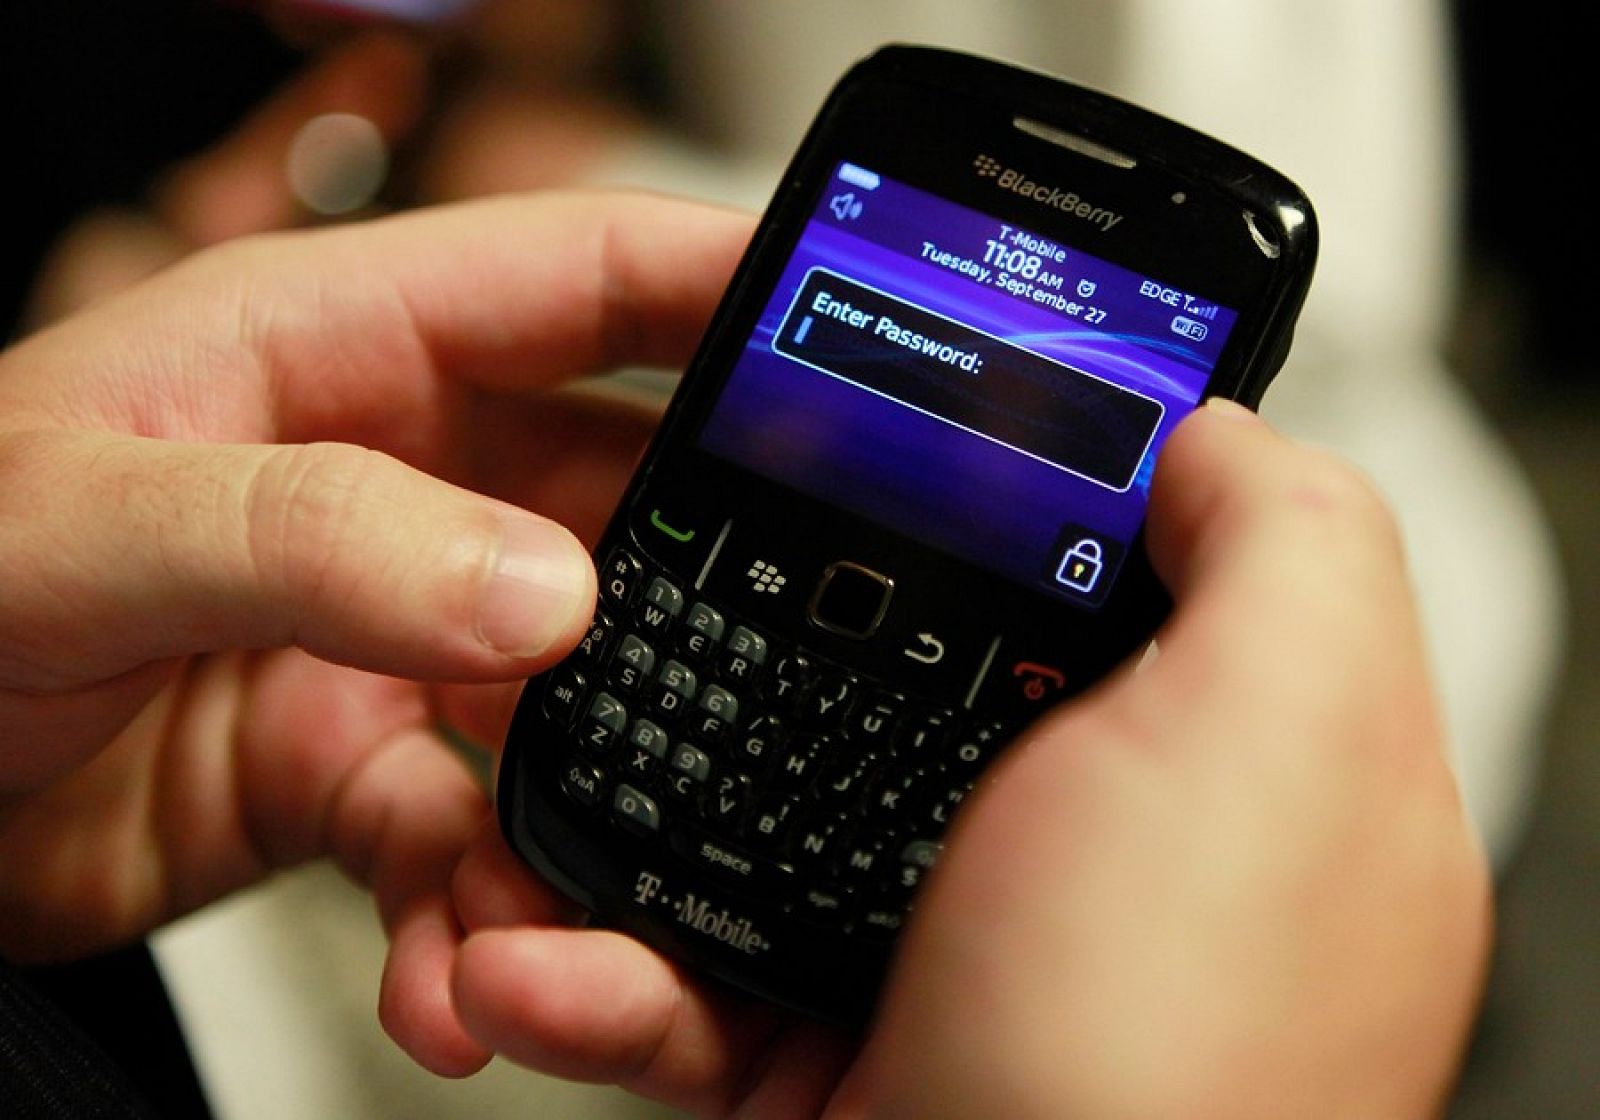 El fallo de RIM ha afectado a Blackberrys de Europa, África y Oriente Medio